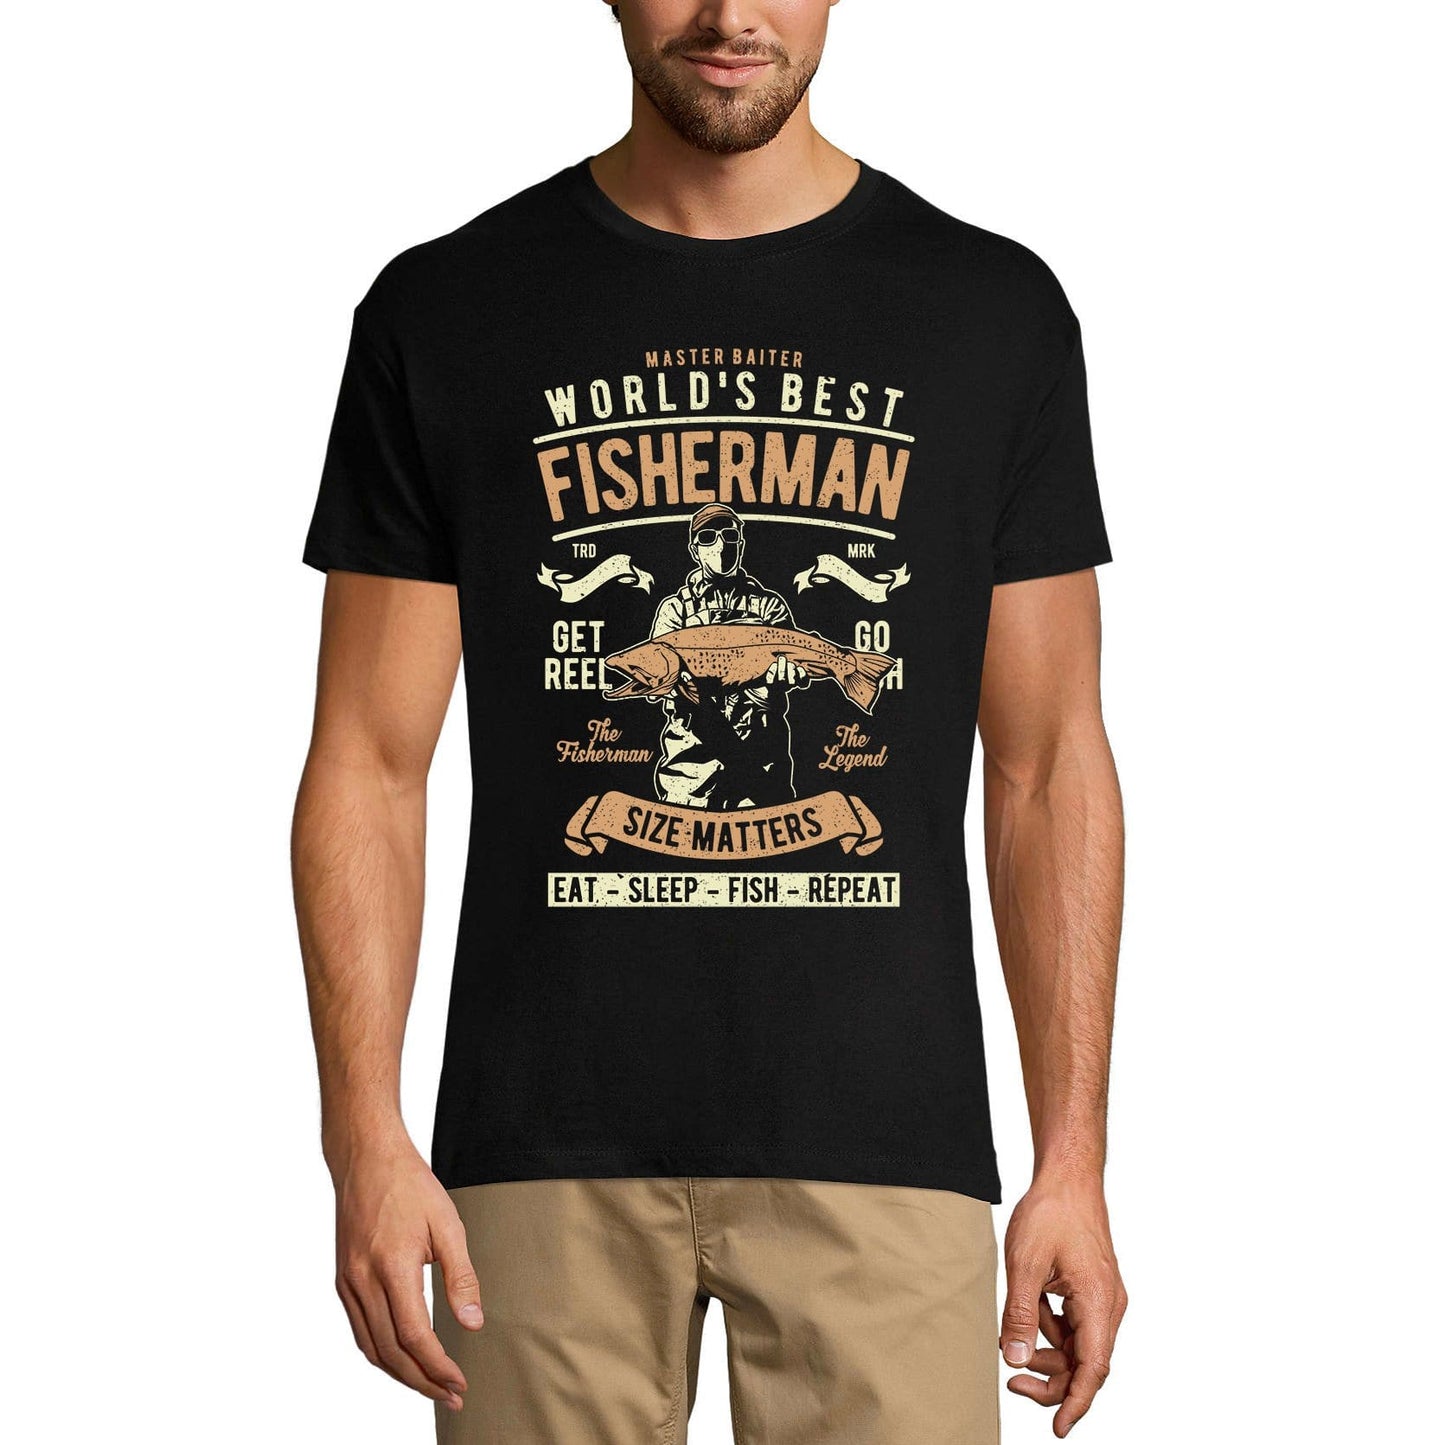 ULTRABASIC Herren T-Shirt Master Baiter – World's Best Fisherman – Size Matter Lustiges T-Shirt